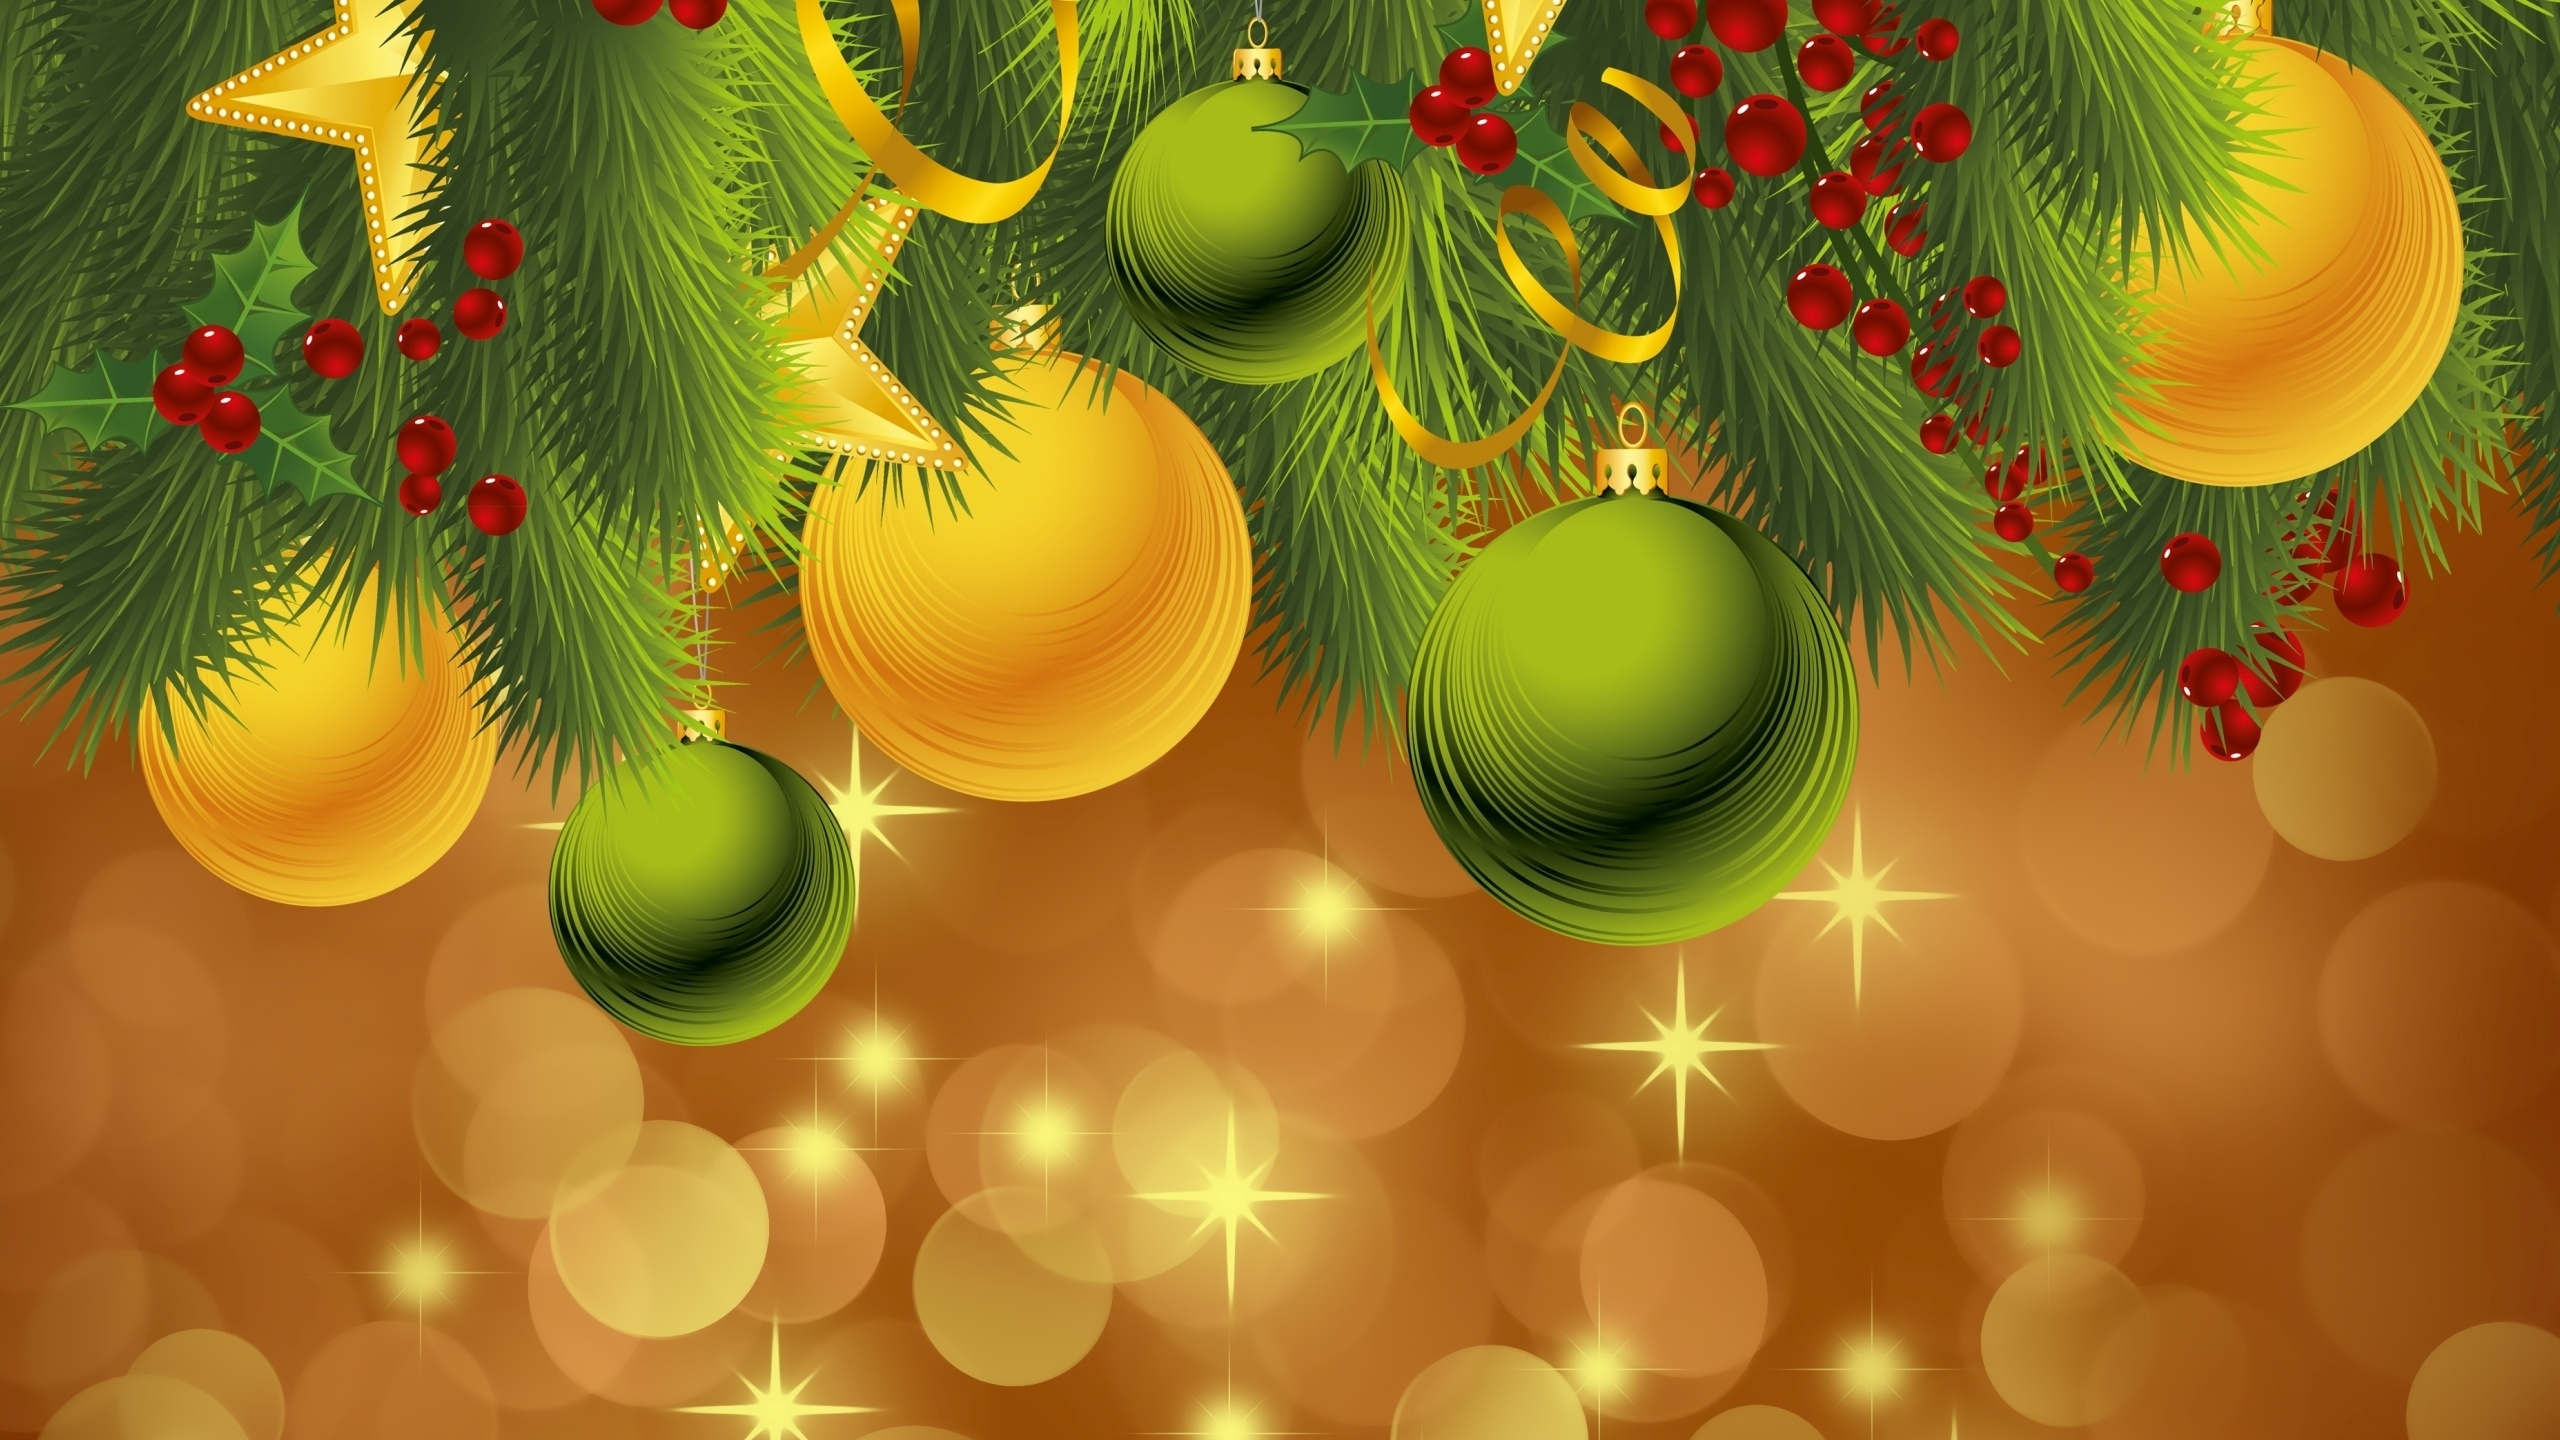 El Día De Navidad, Nochevieja, Adorno de Navidad, Verde, Decoración de la Navidad. Wallpaper in 2560x1440 Resolution